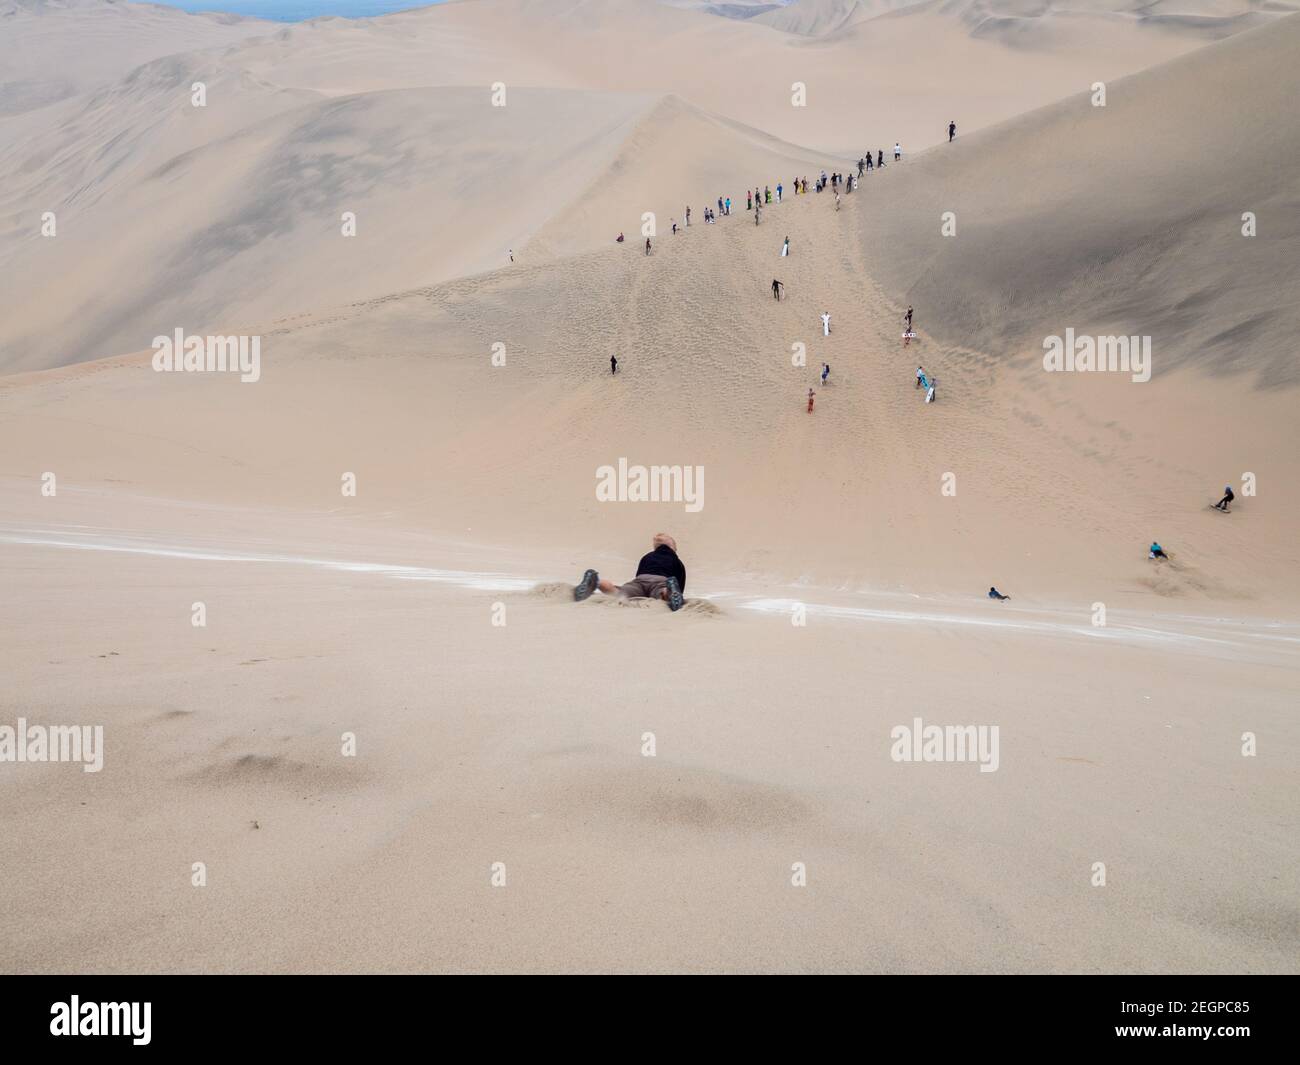 Les touristes glissent sur une dune de sable dans le désert de Huacachina au Pérou, de nombreux touristes attendent au fond Banque D'Images